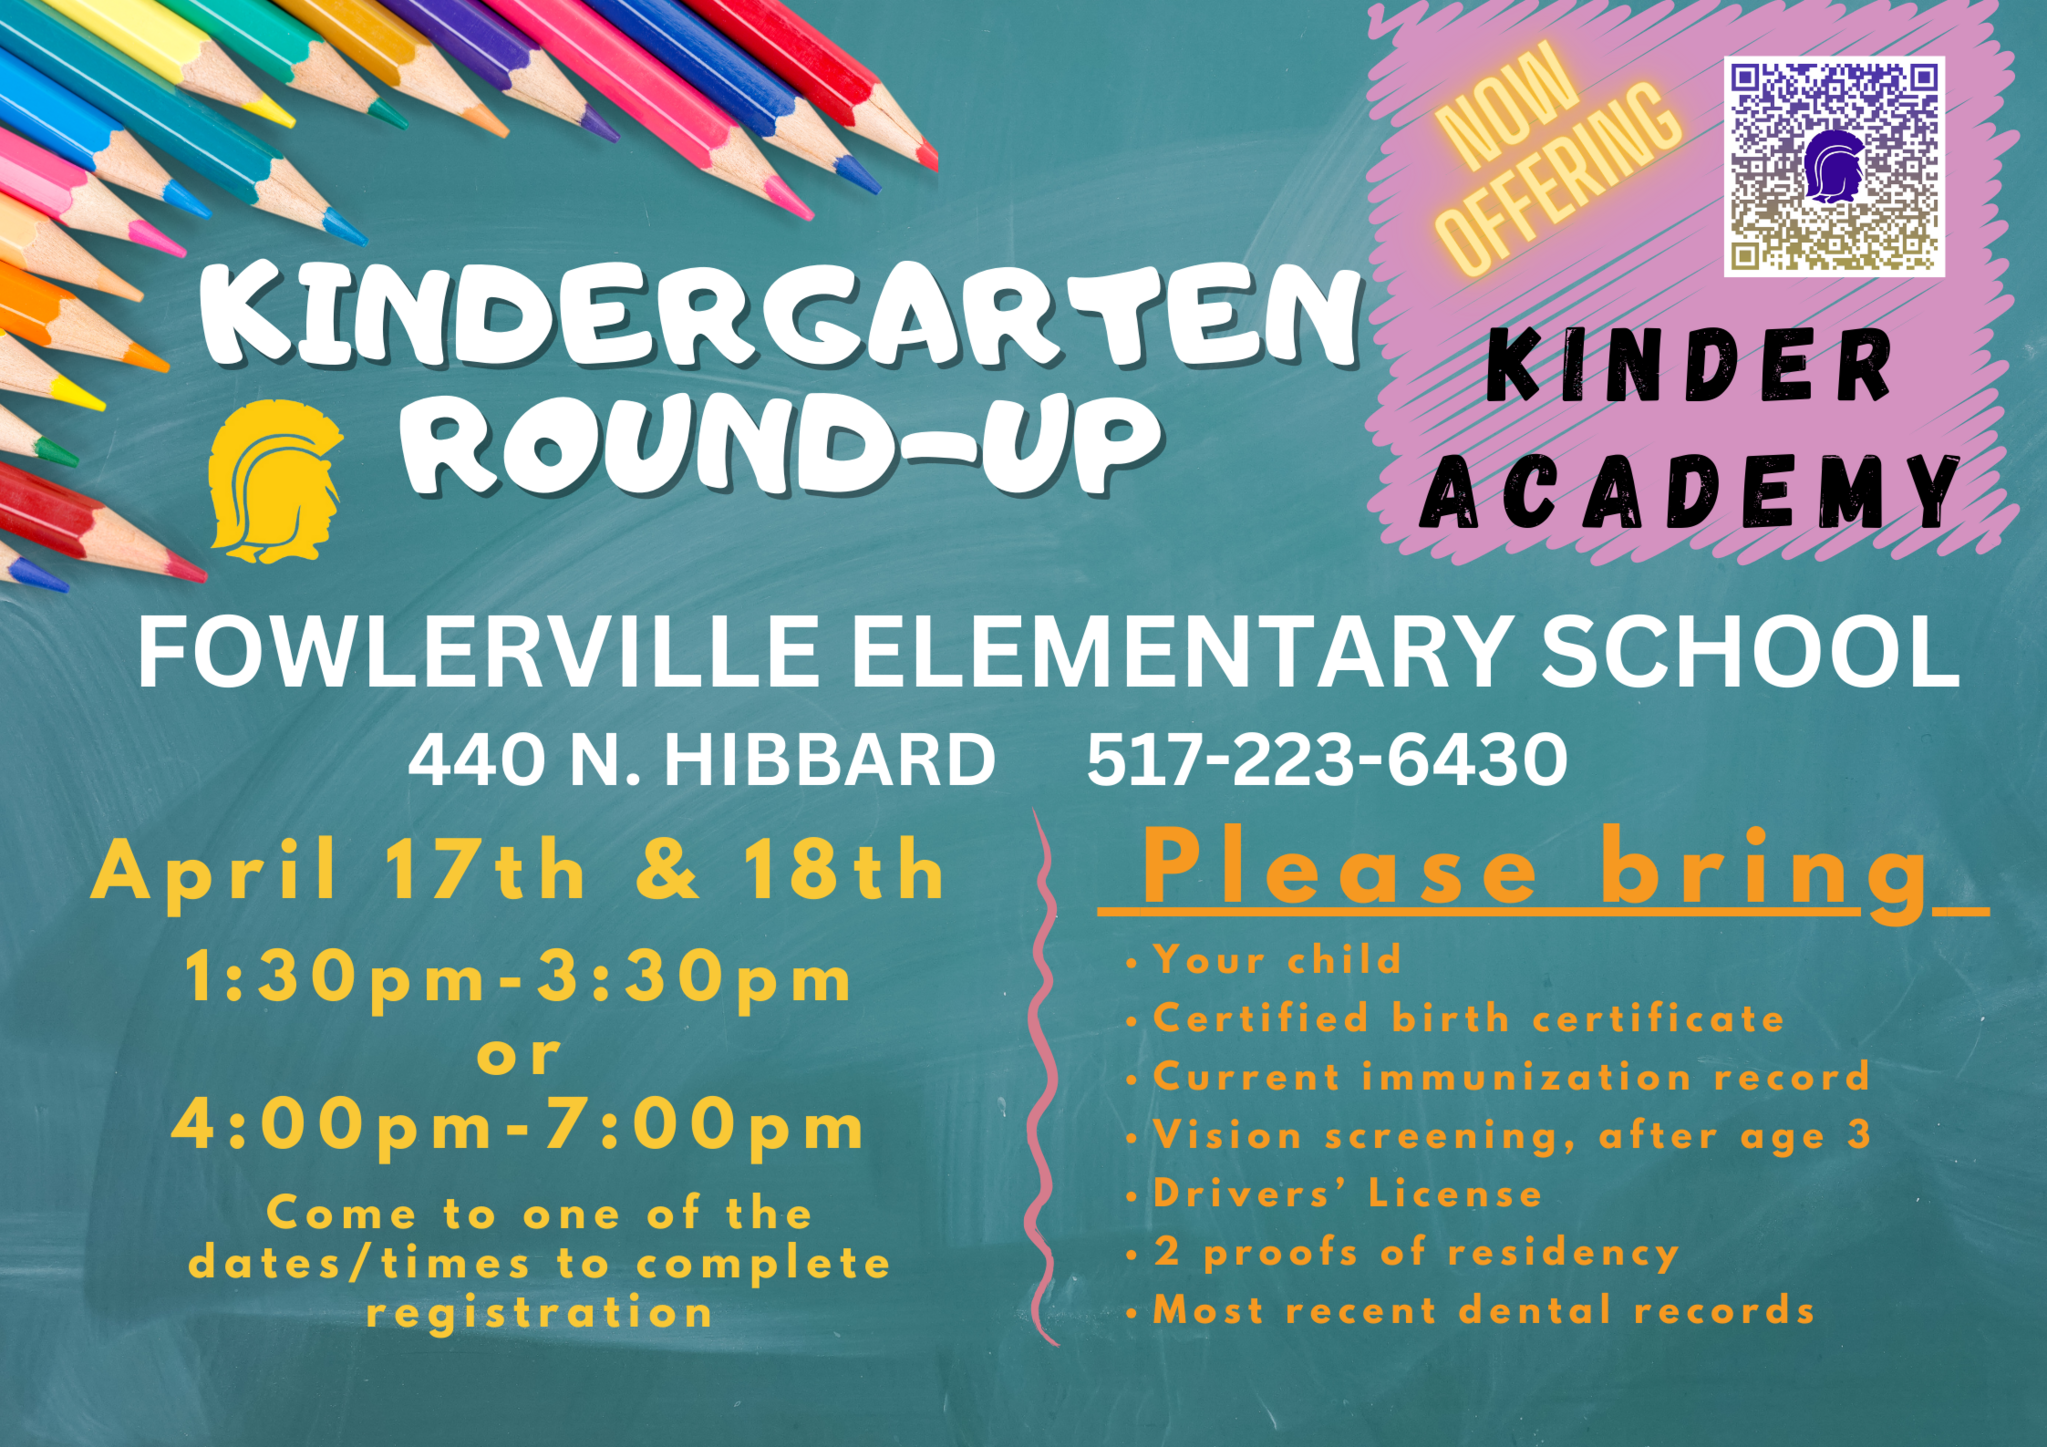 Kindergarten Round-Up Flyer